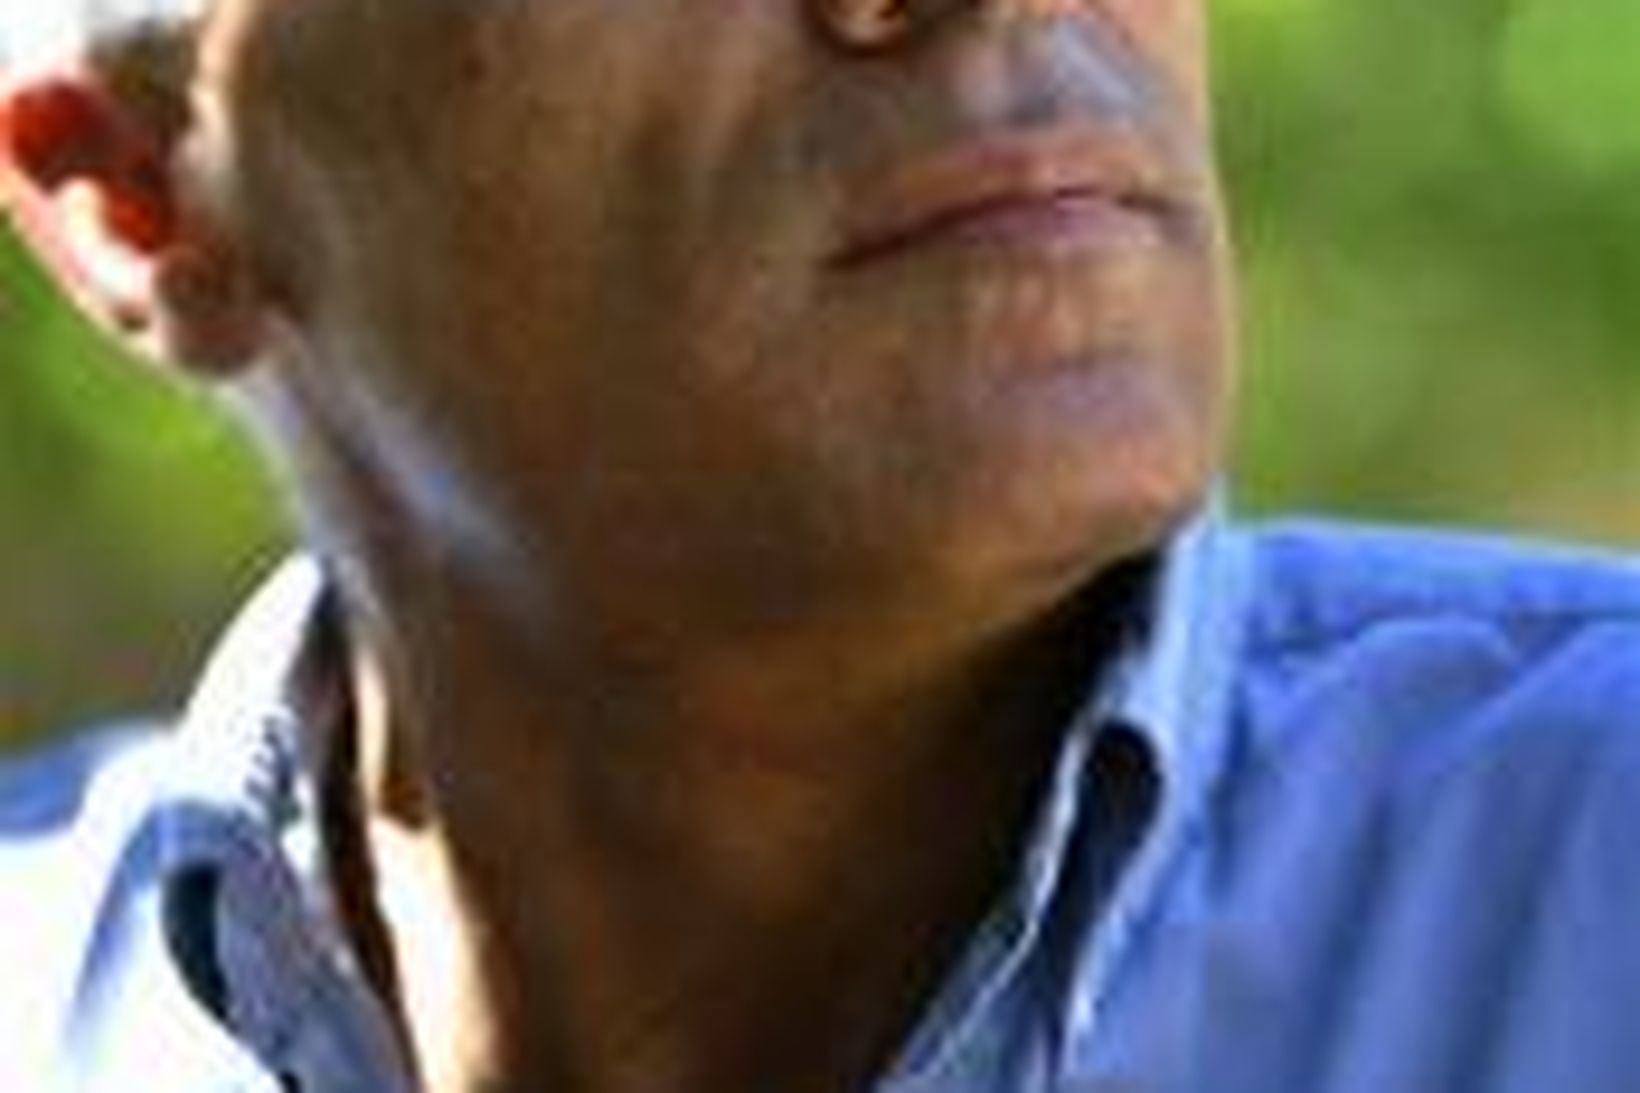 Mordechai Vanunu.